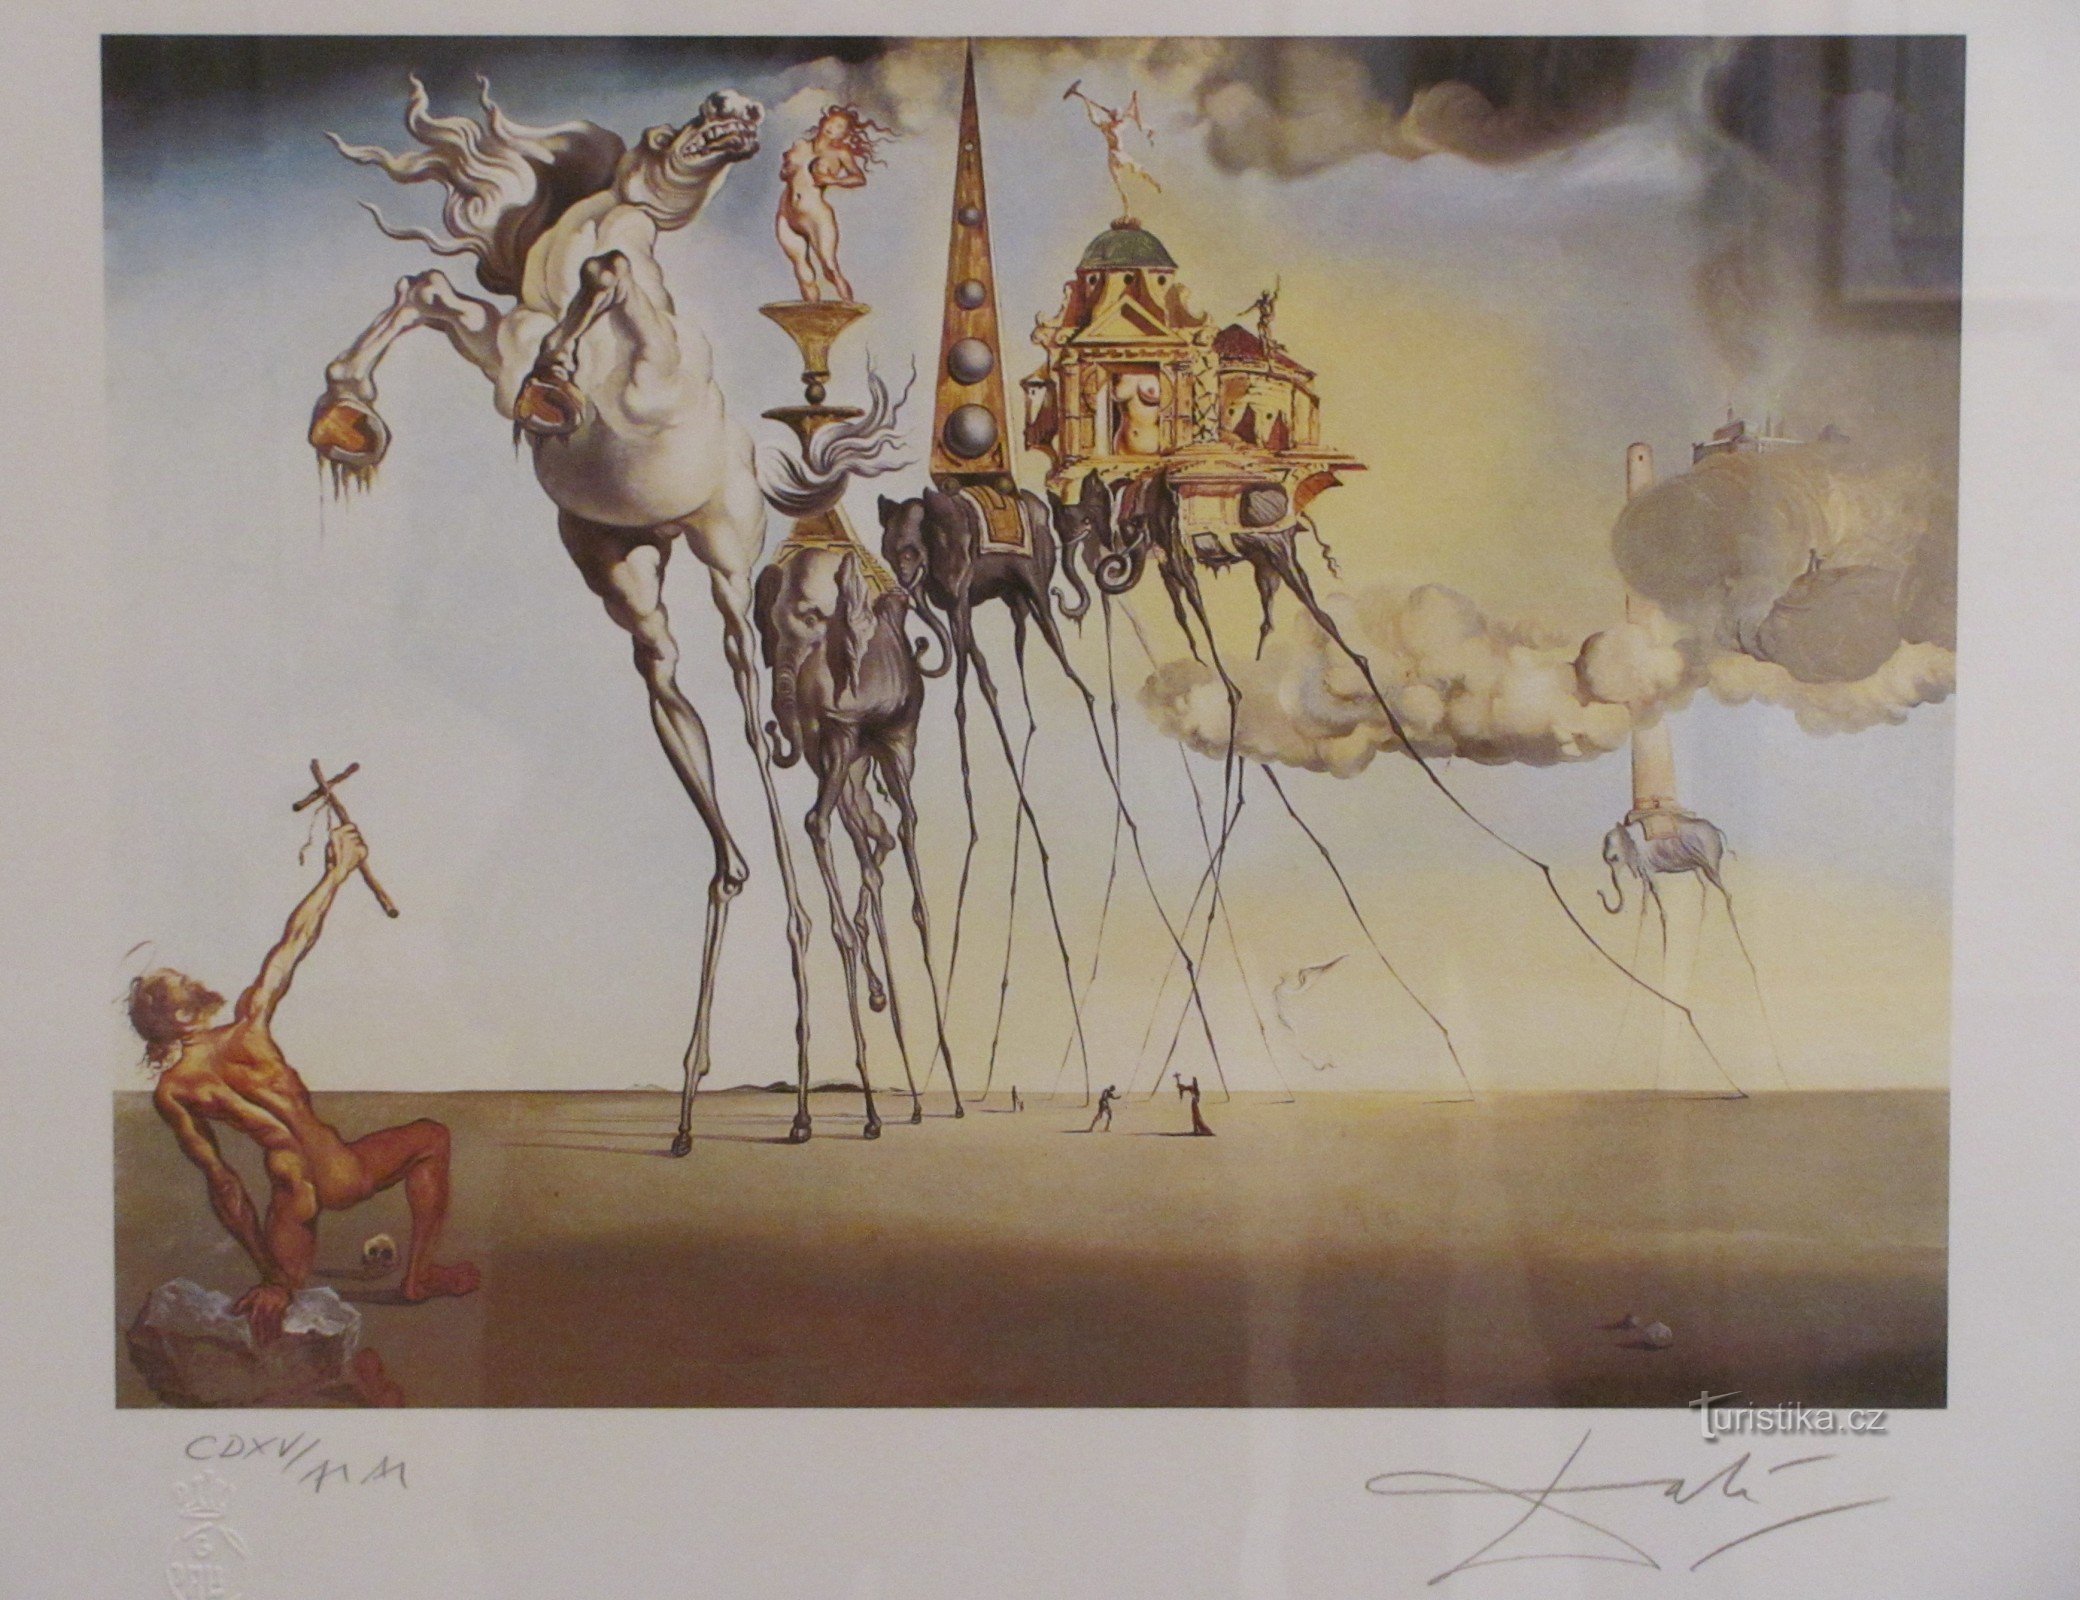 Olomouc - Salvador Dalí / Wybór z pracy (Hiszpański surrealizm w OVM)